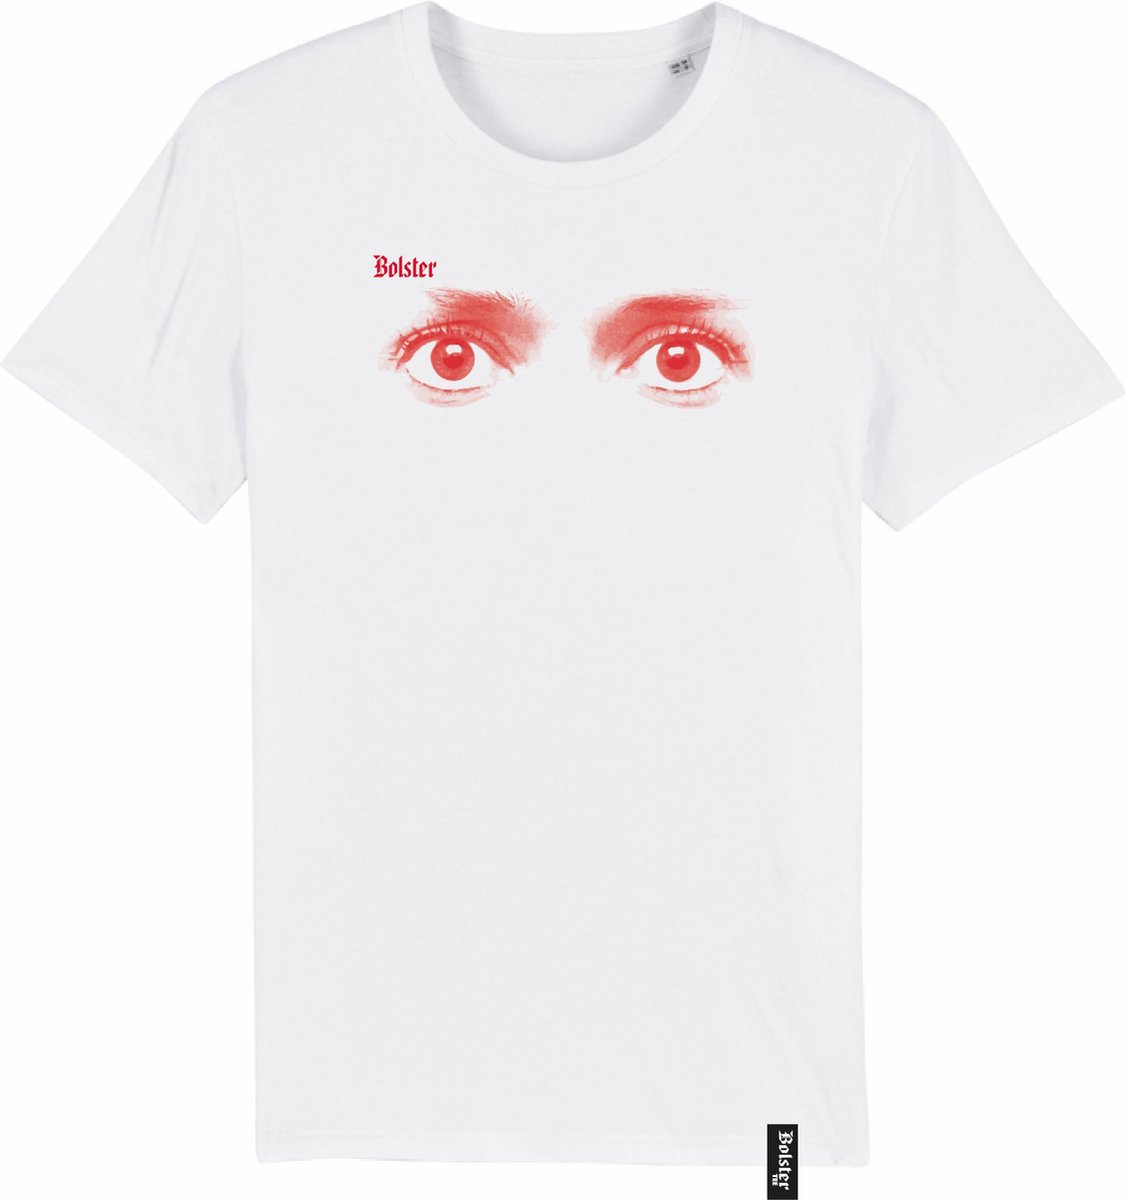 T-shirt | Bolster#0015 - Ogen| Maat: XL